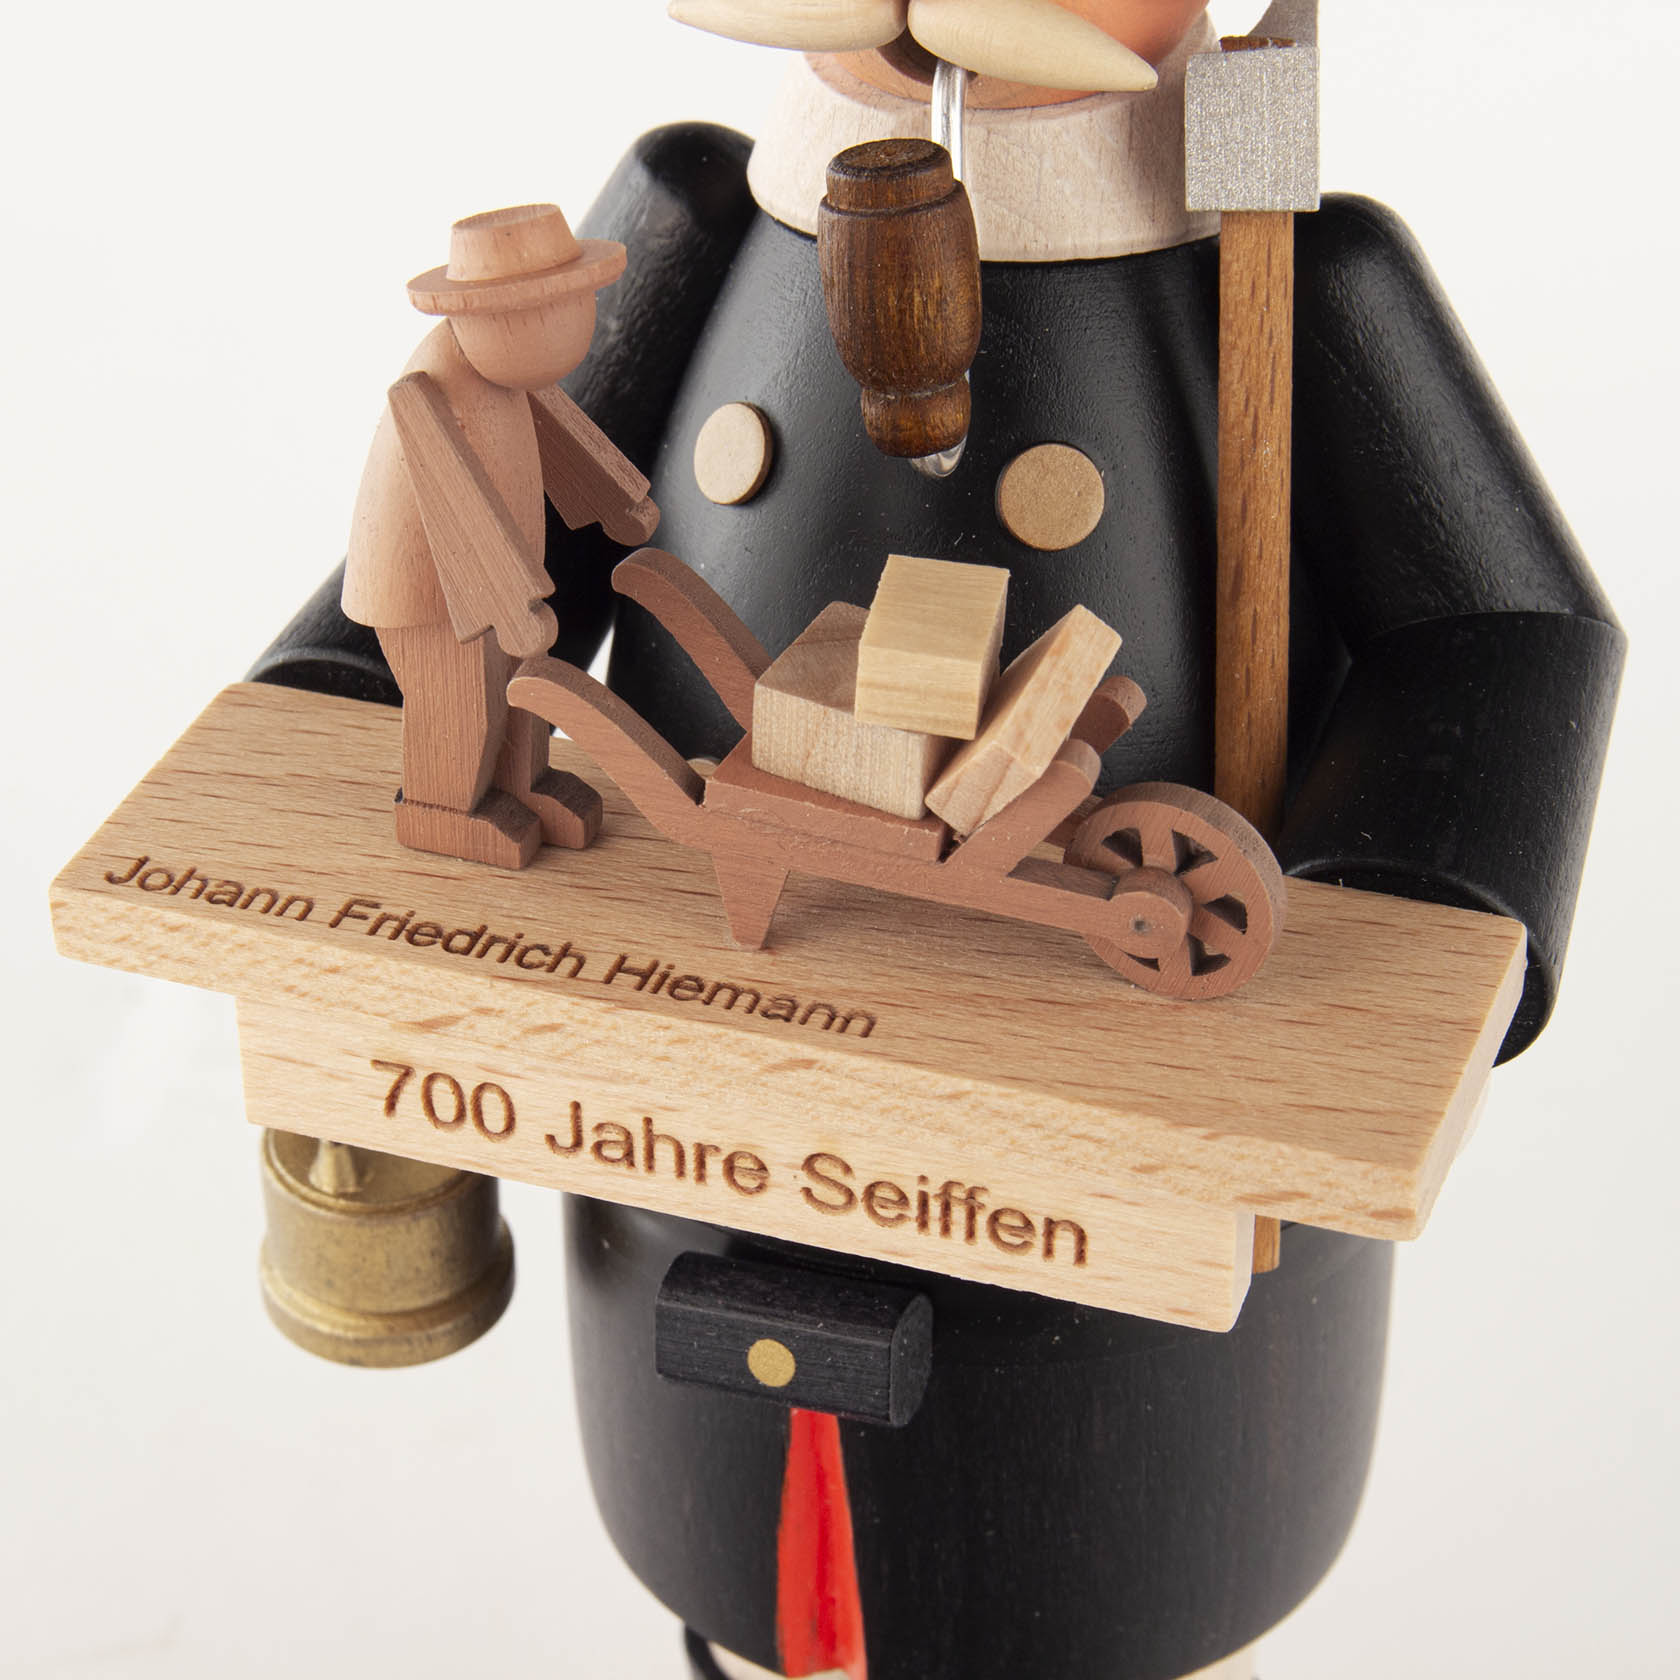 Räuchermann Bergmann 700 Jahre Seiffen mit Jubiläumsfigur 325 Jahre J.F.Hiemann -Limitierte Auflage-